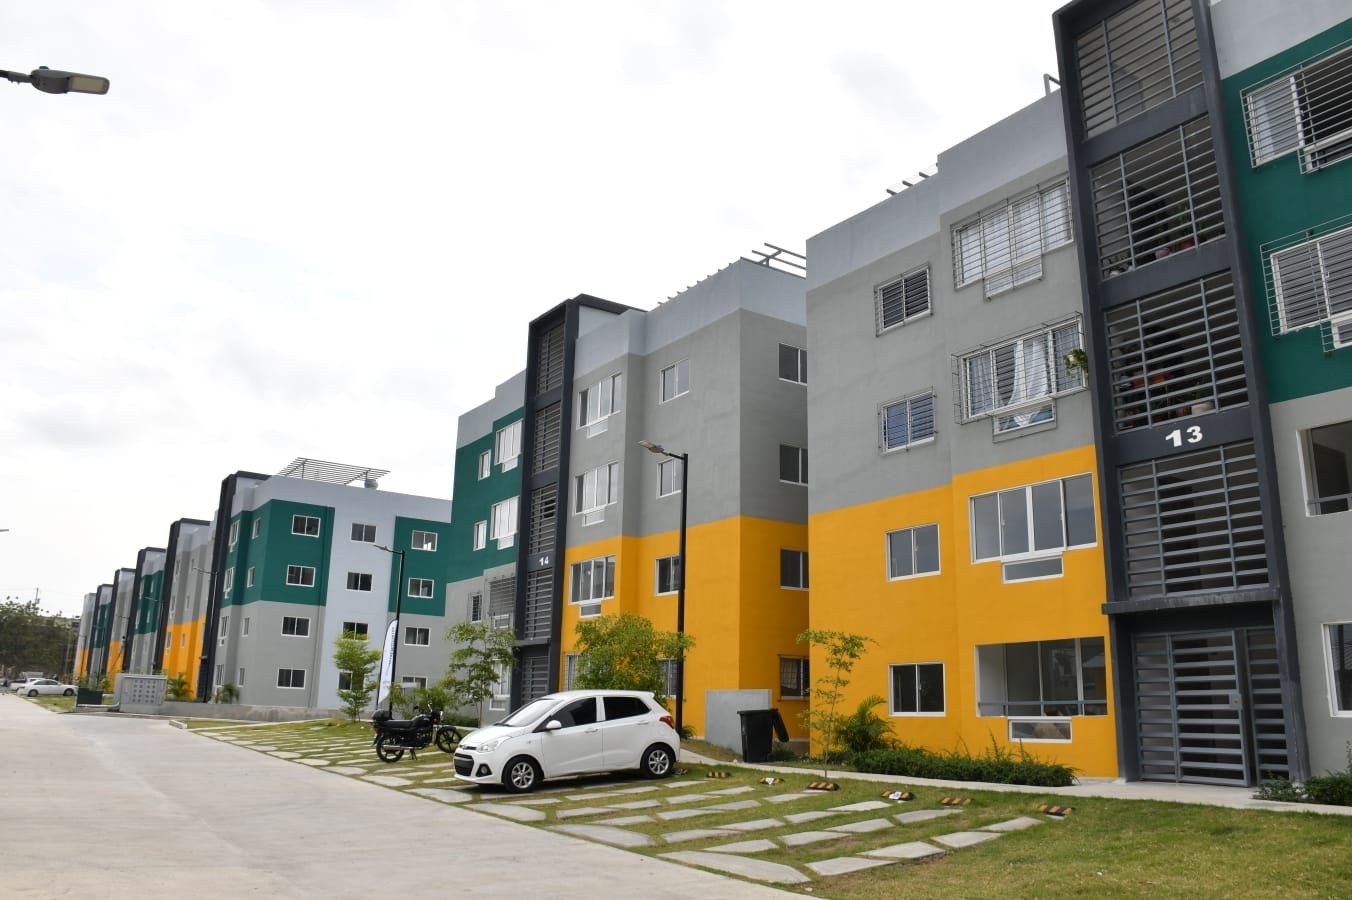 apartamentos - Se vende proyecto residencial en Santo Domingo Norte

US$75,000 0